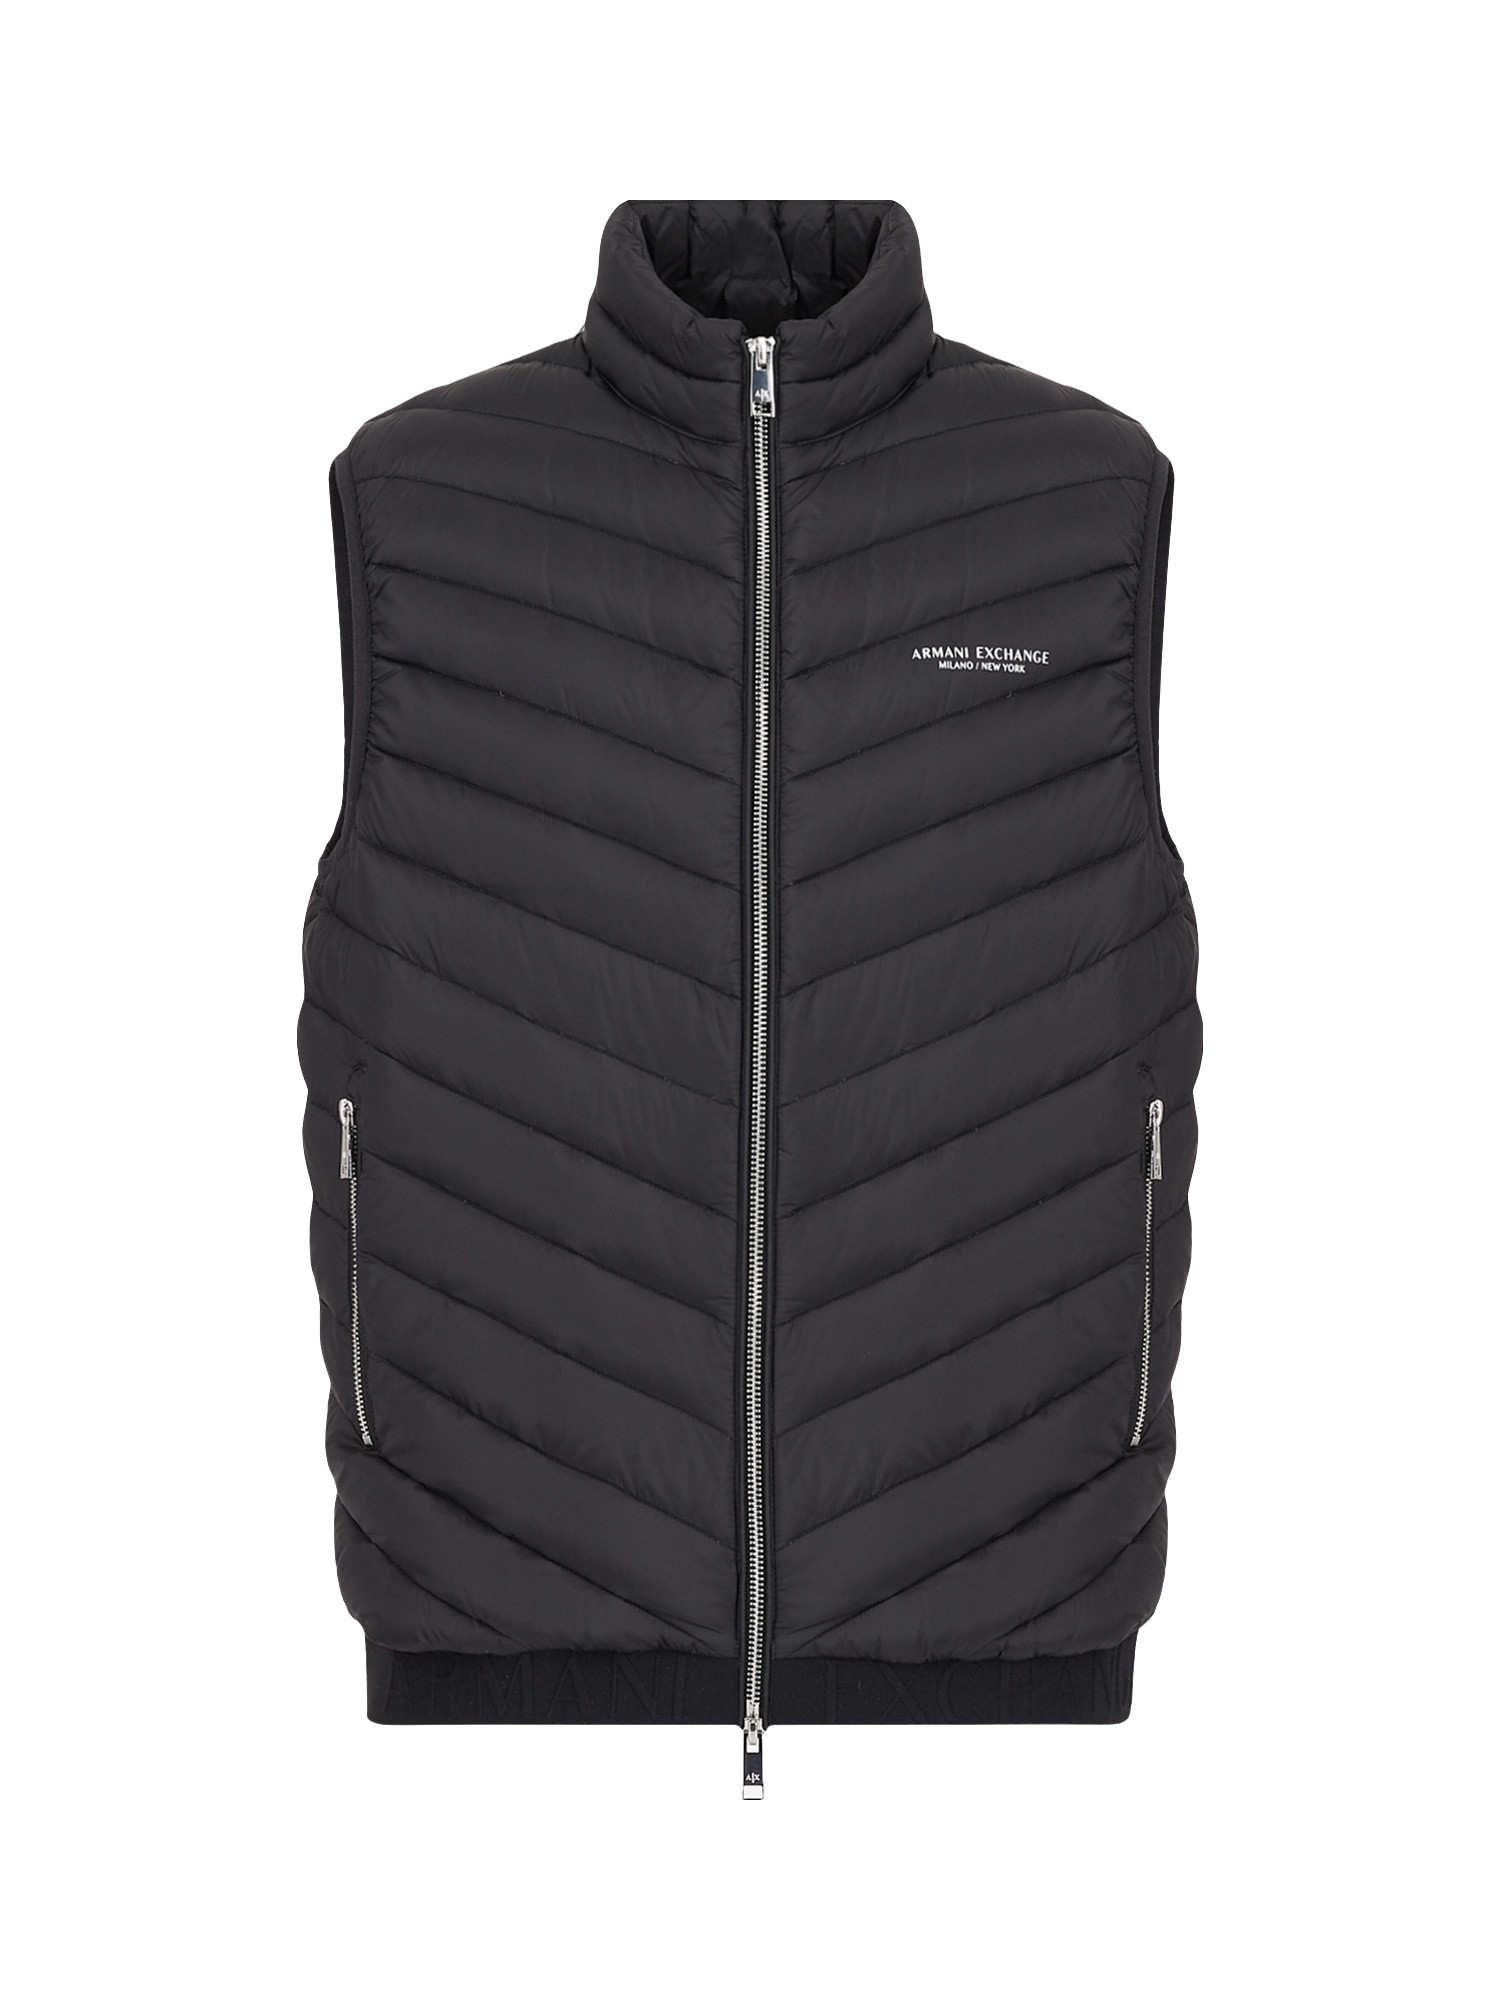 Armani Exchange - Padded sleeveless down jacket, Black, large image number 0